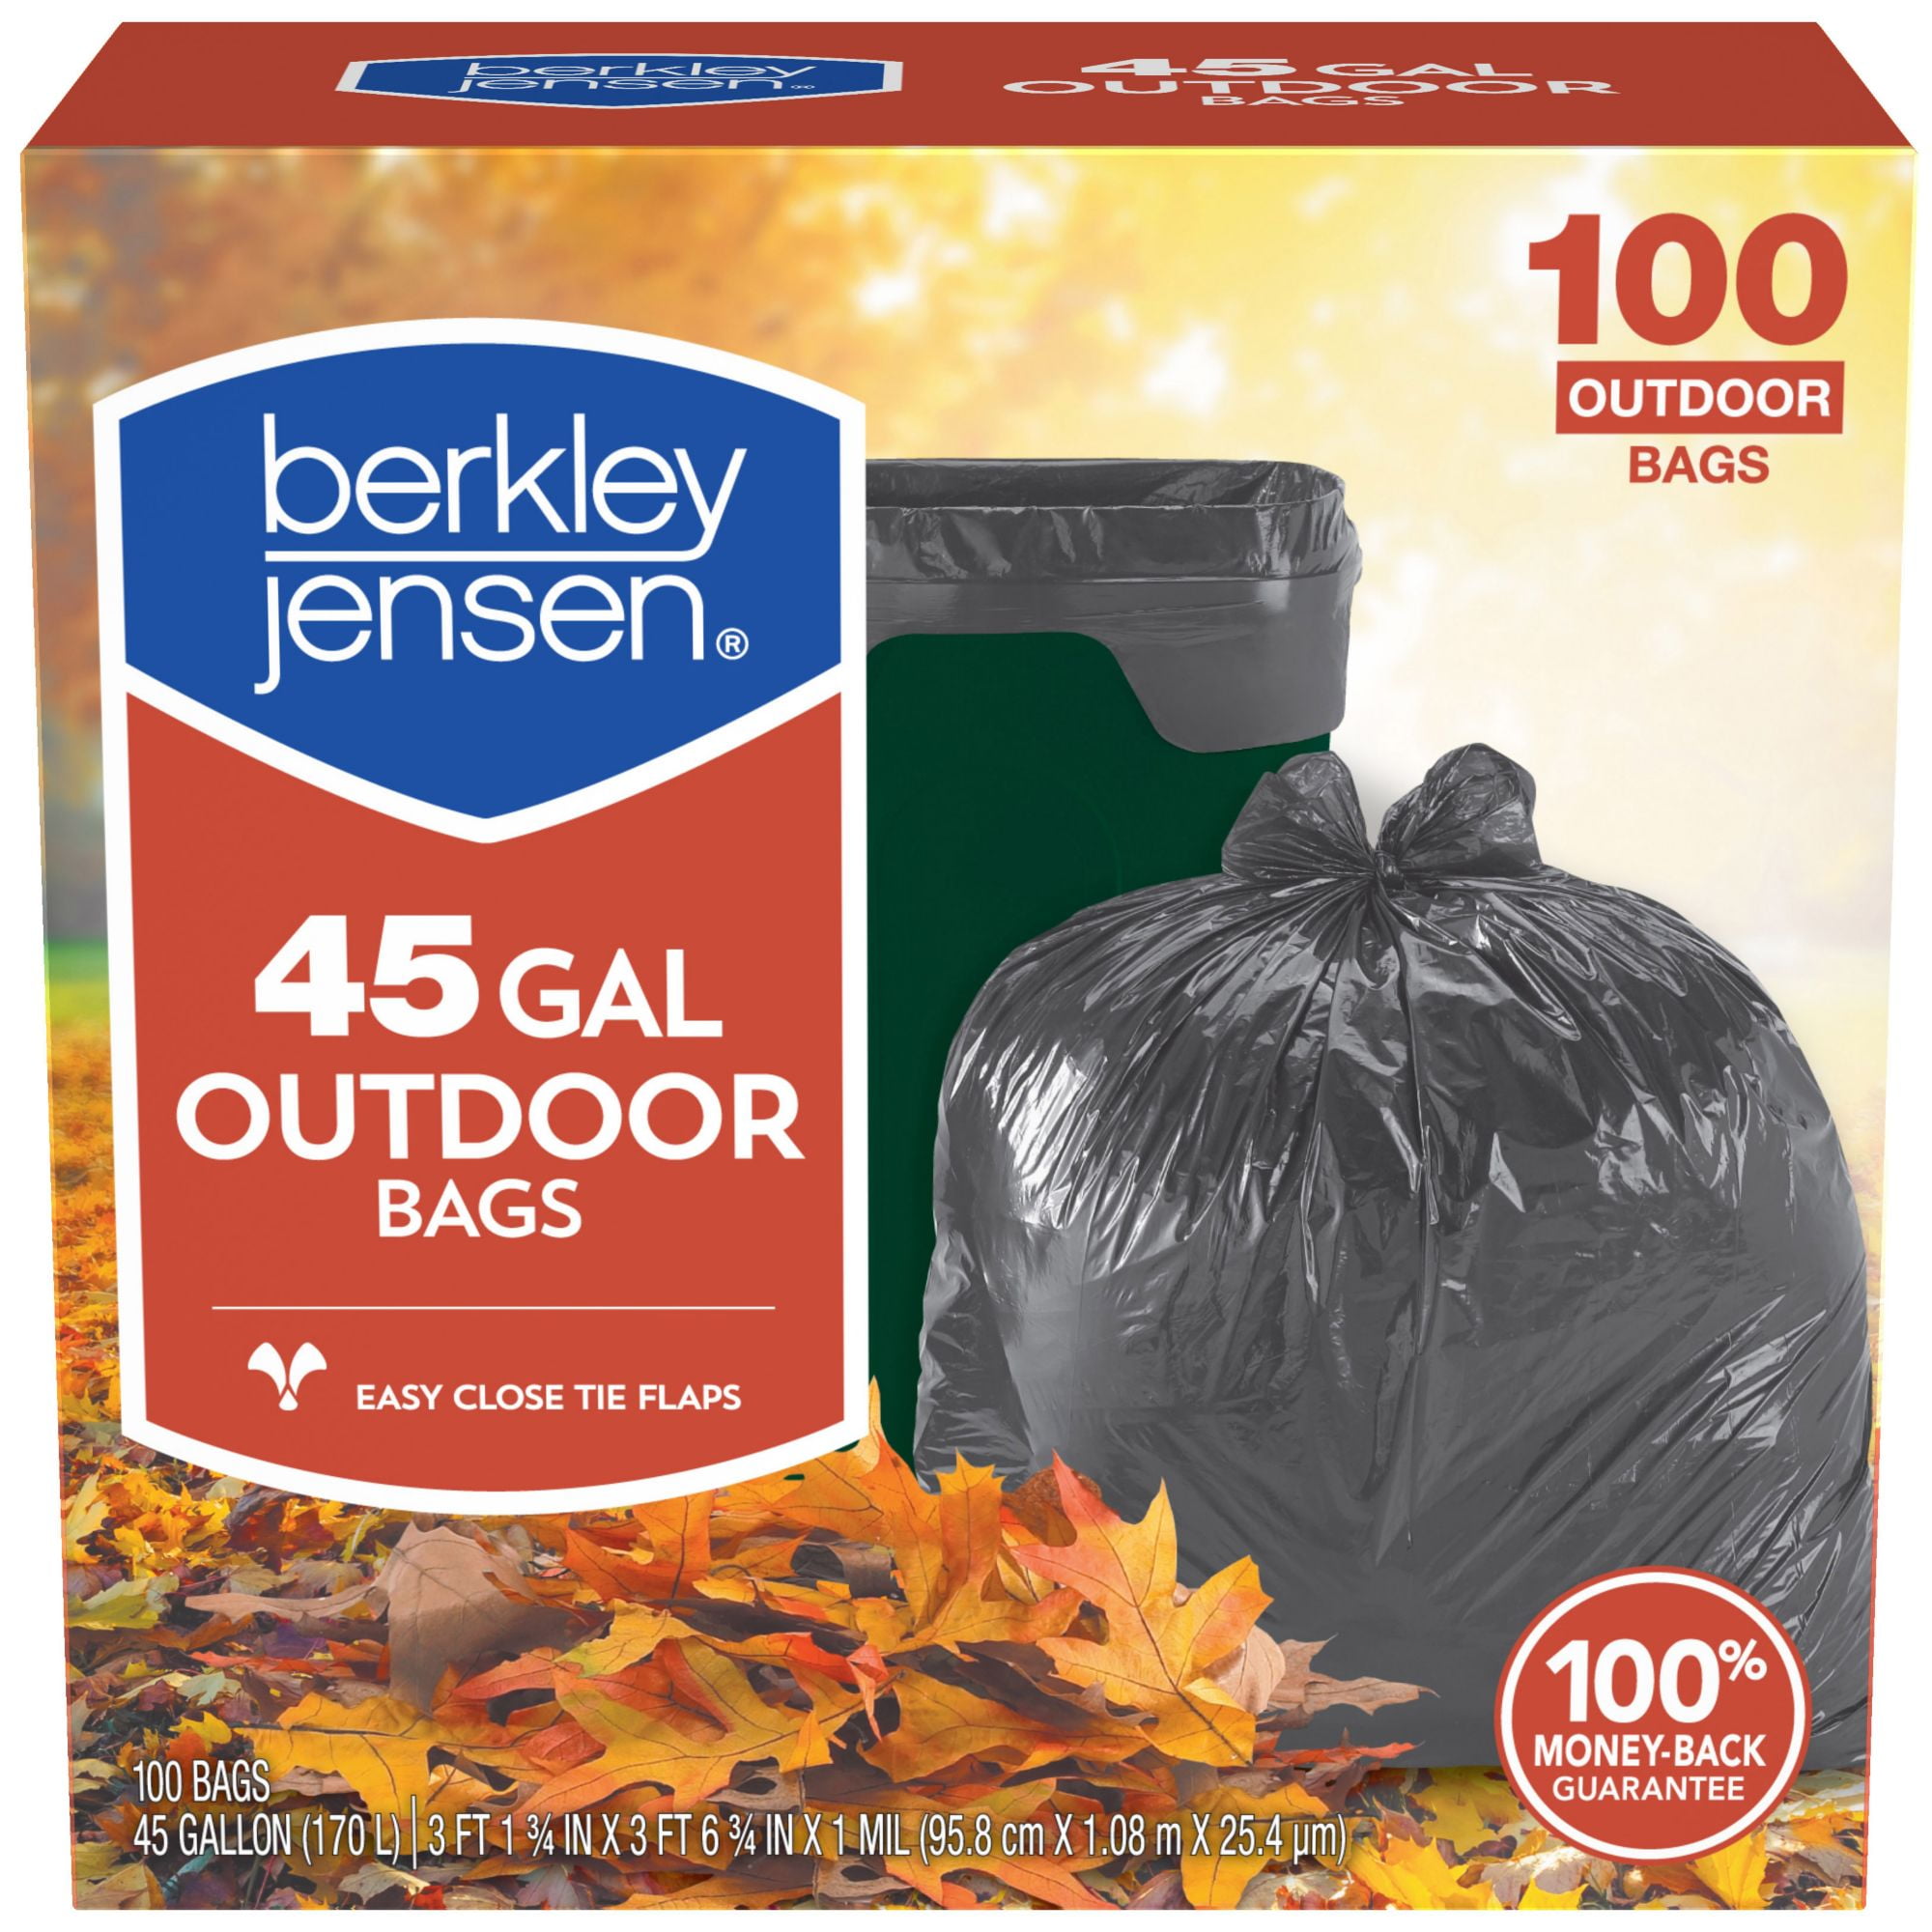 Berkley Jensen 30 Gallon Lawn Bags, 25 ct